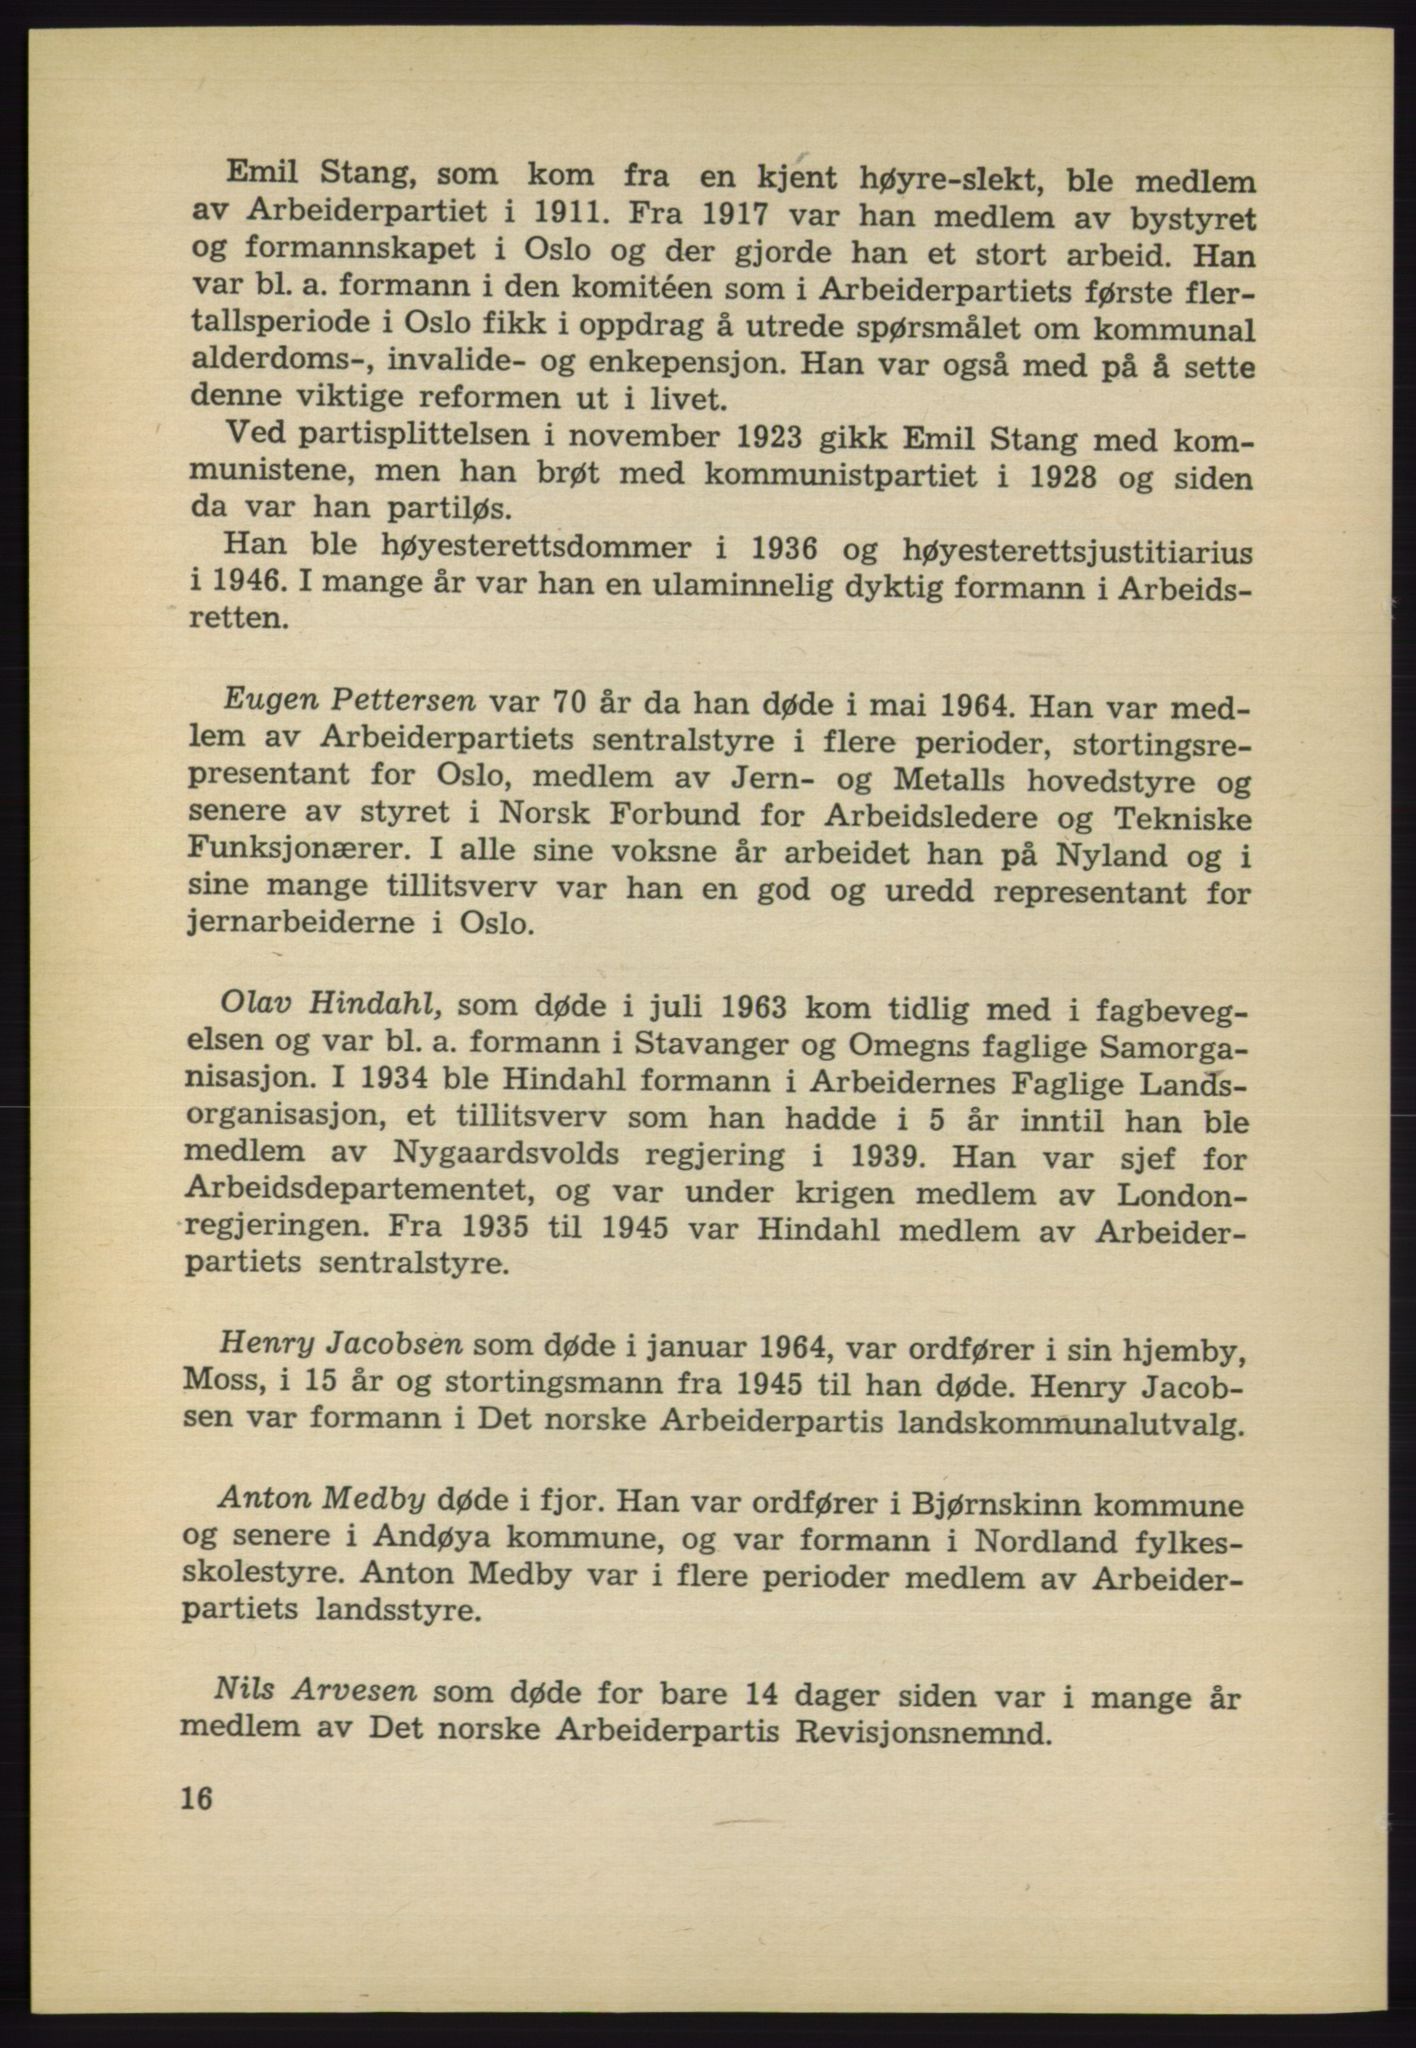 Det norske Arbeiderparti - publikasjoner, AAB/-/-/-: Protokoll over forhandlingene på det 40. ordinære landsmøte 27.-29. mai 1965 i Oslo, 1965, p. 16